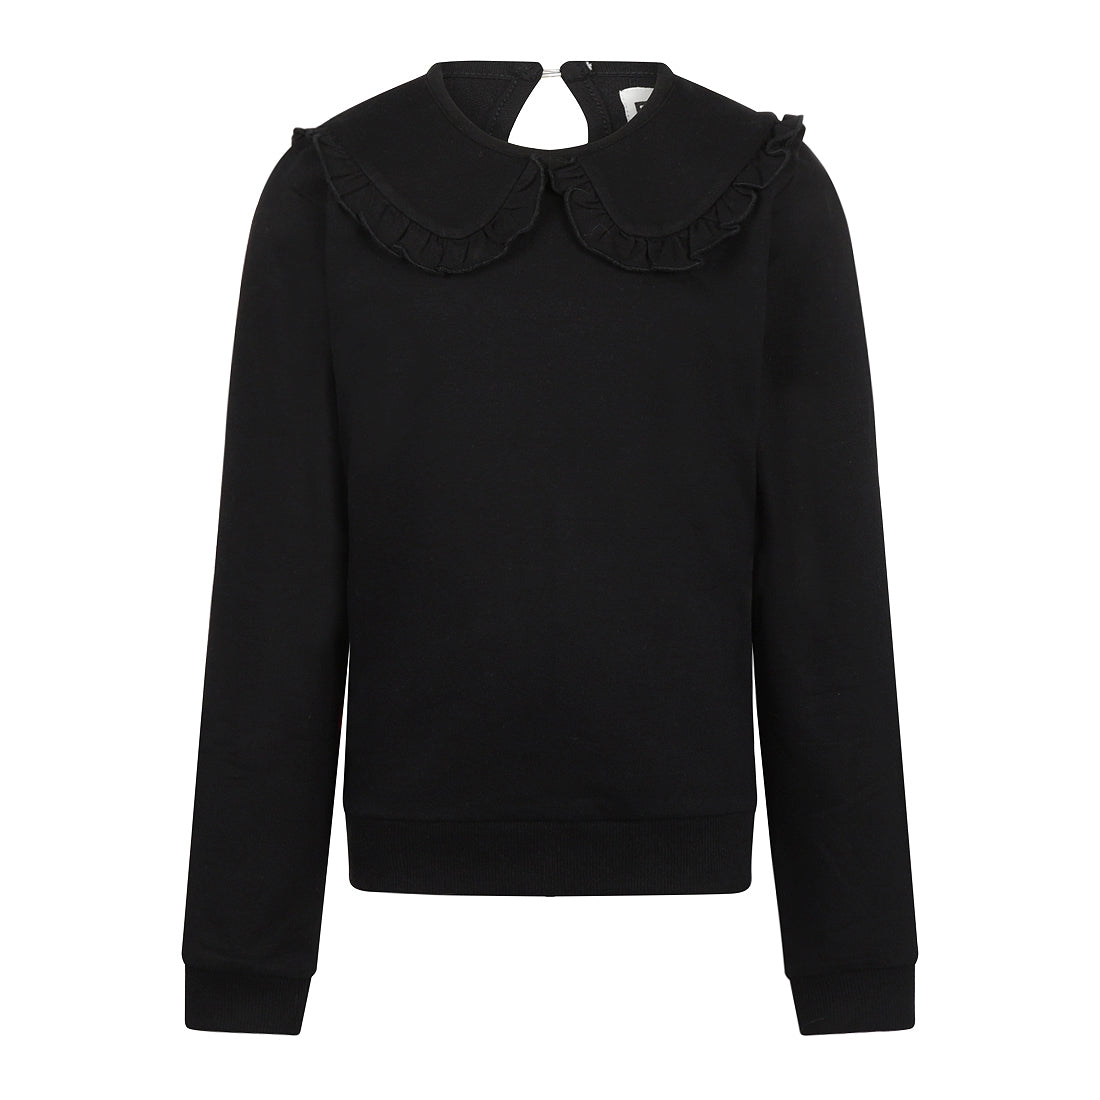 Meisjes Sweater van No Way Monday in de kleur Black in maat 164.